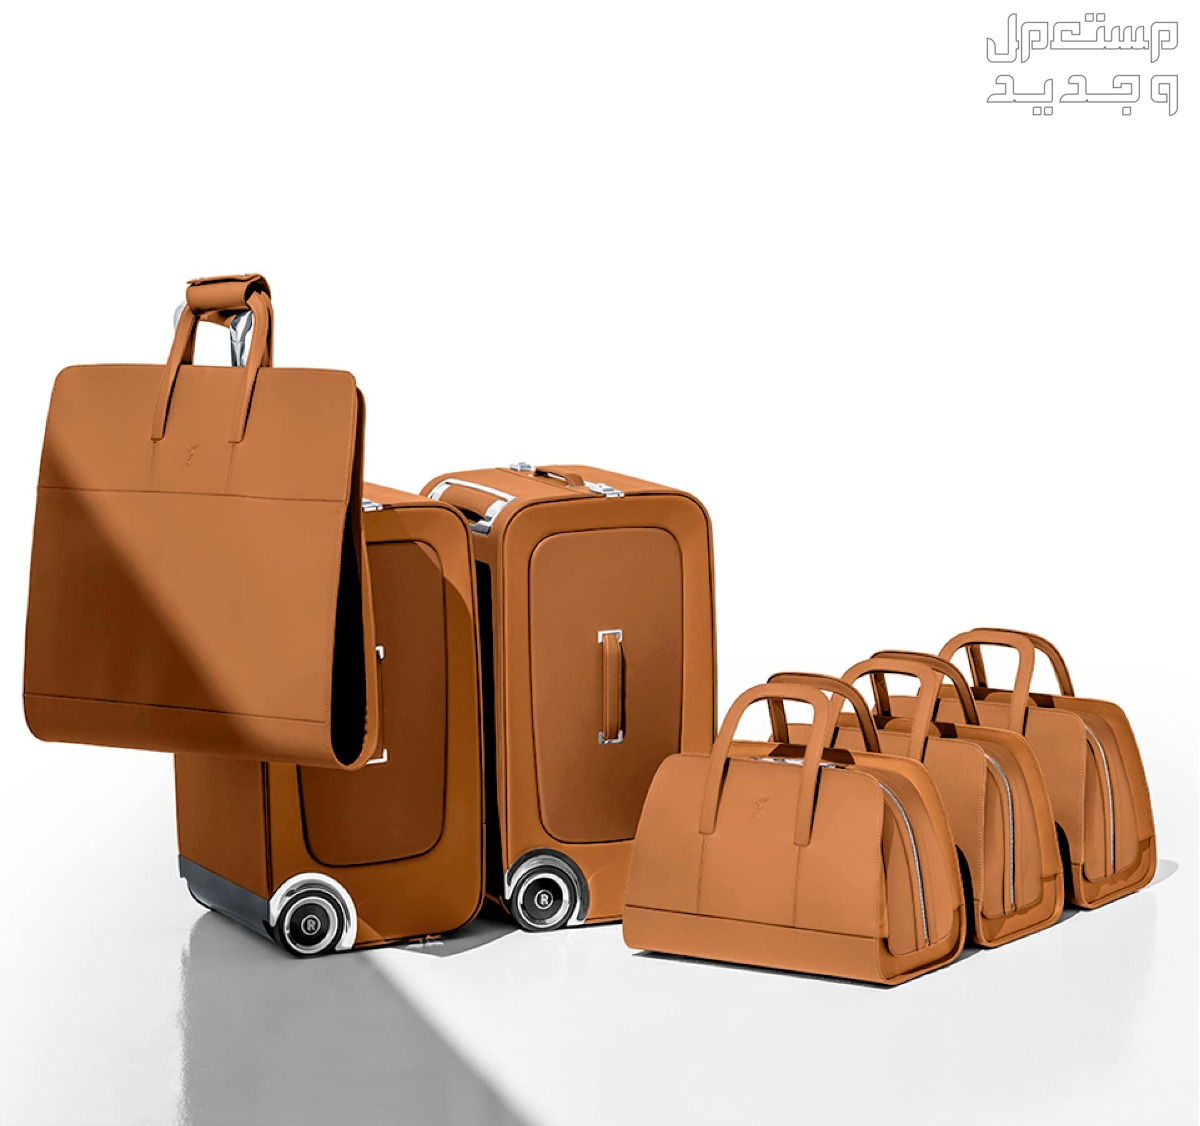 تعرف على أغلى حقيبة سفر في العالم في عمان حقائب رولز رويس باللون البني